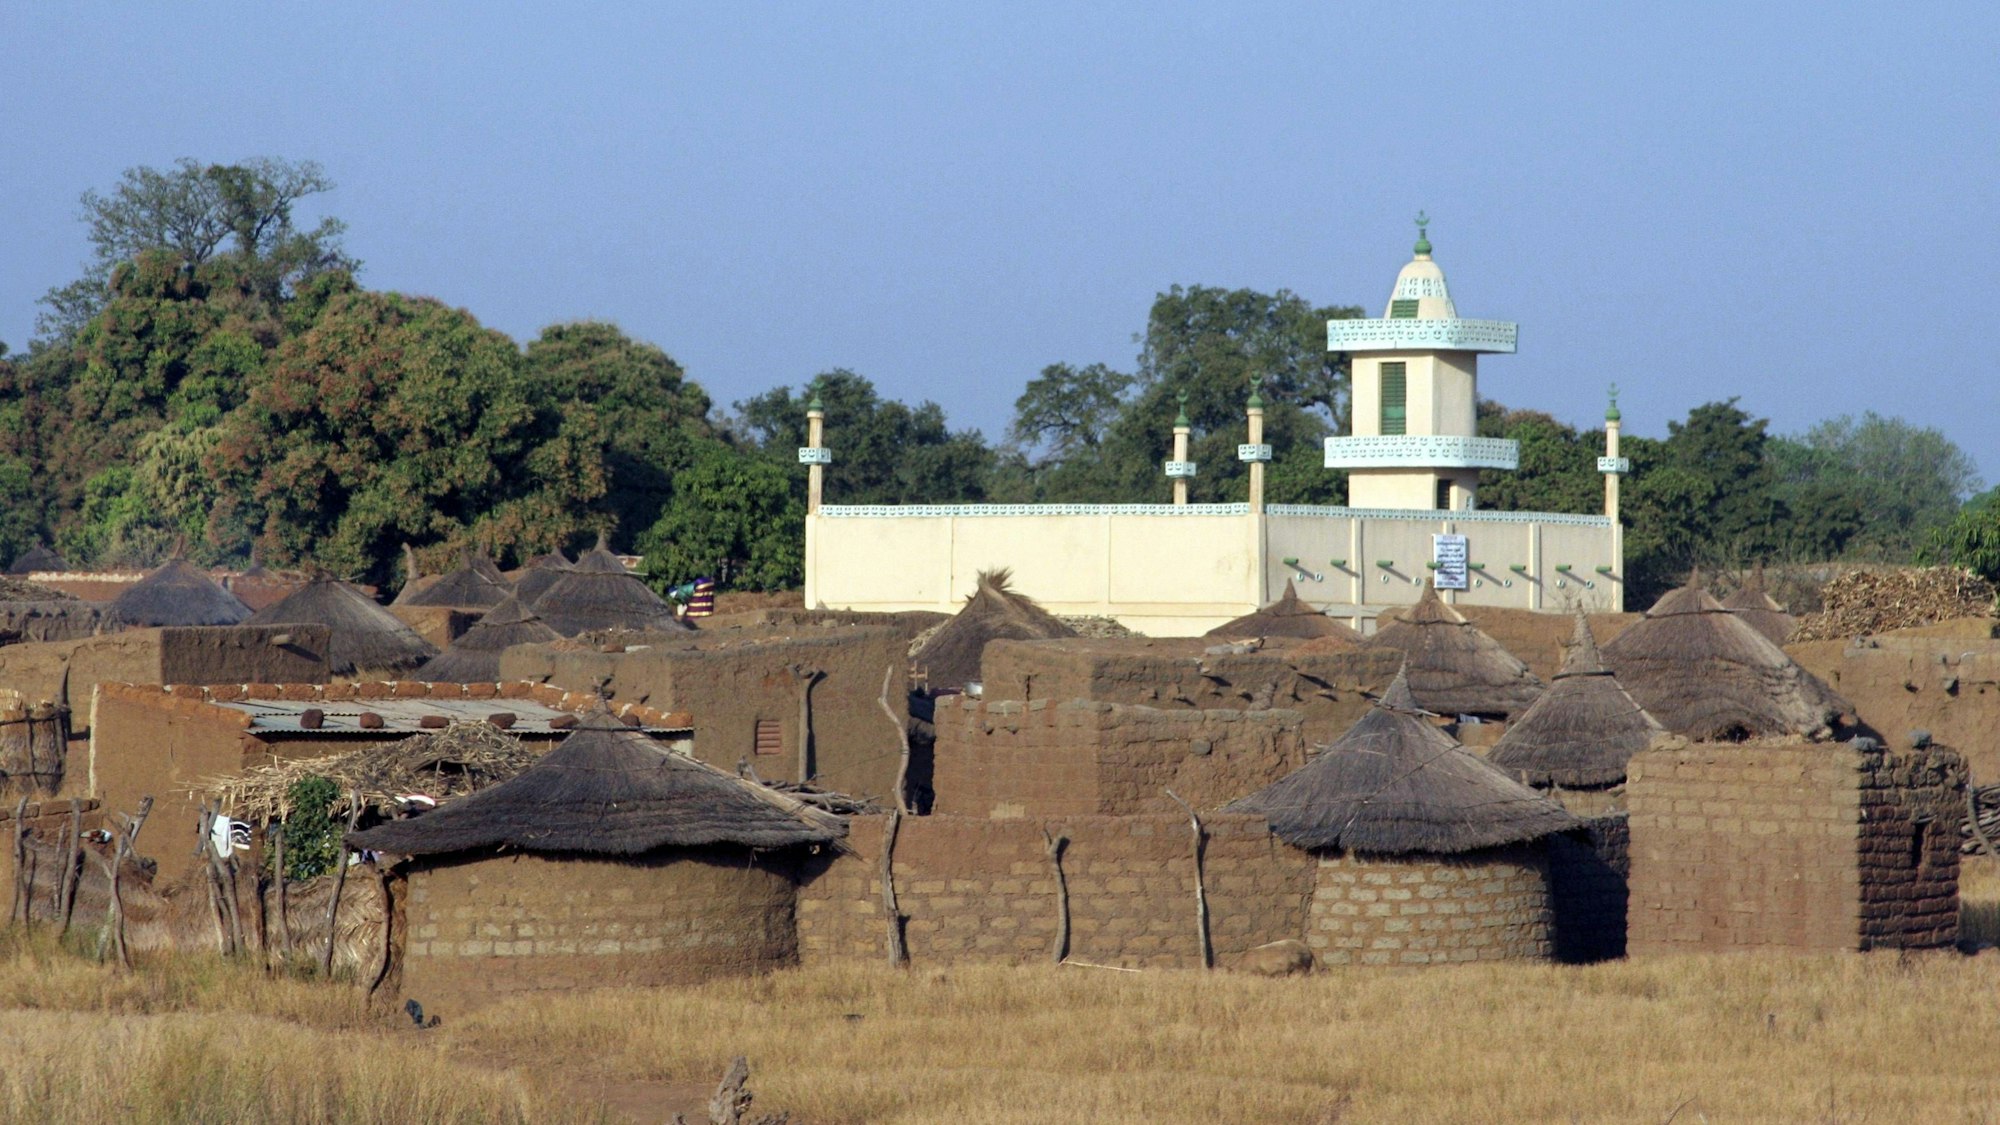 Steinhütten mit Strohdächern und Moschee in einem Dorf in Burkina Faso, Westafrika (Symbolbild)